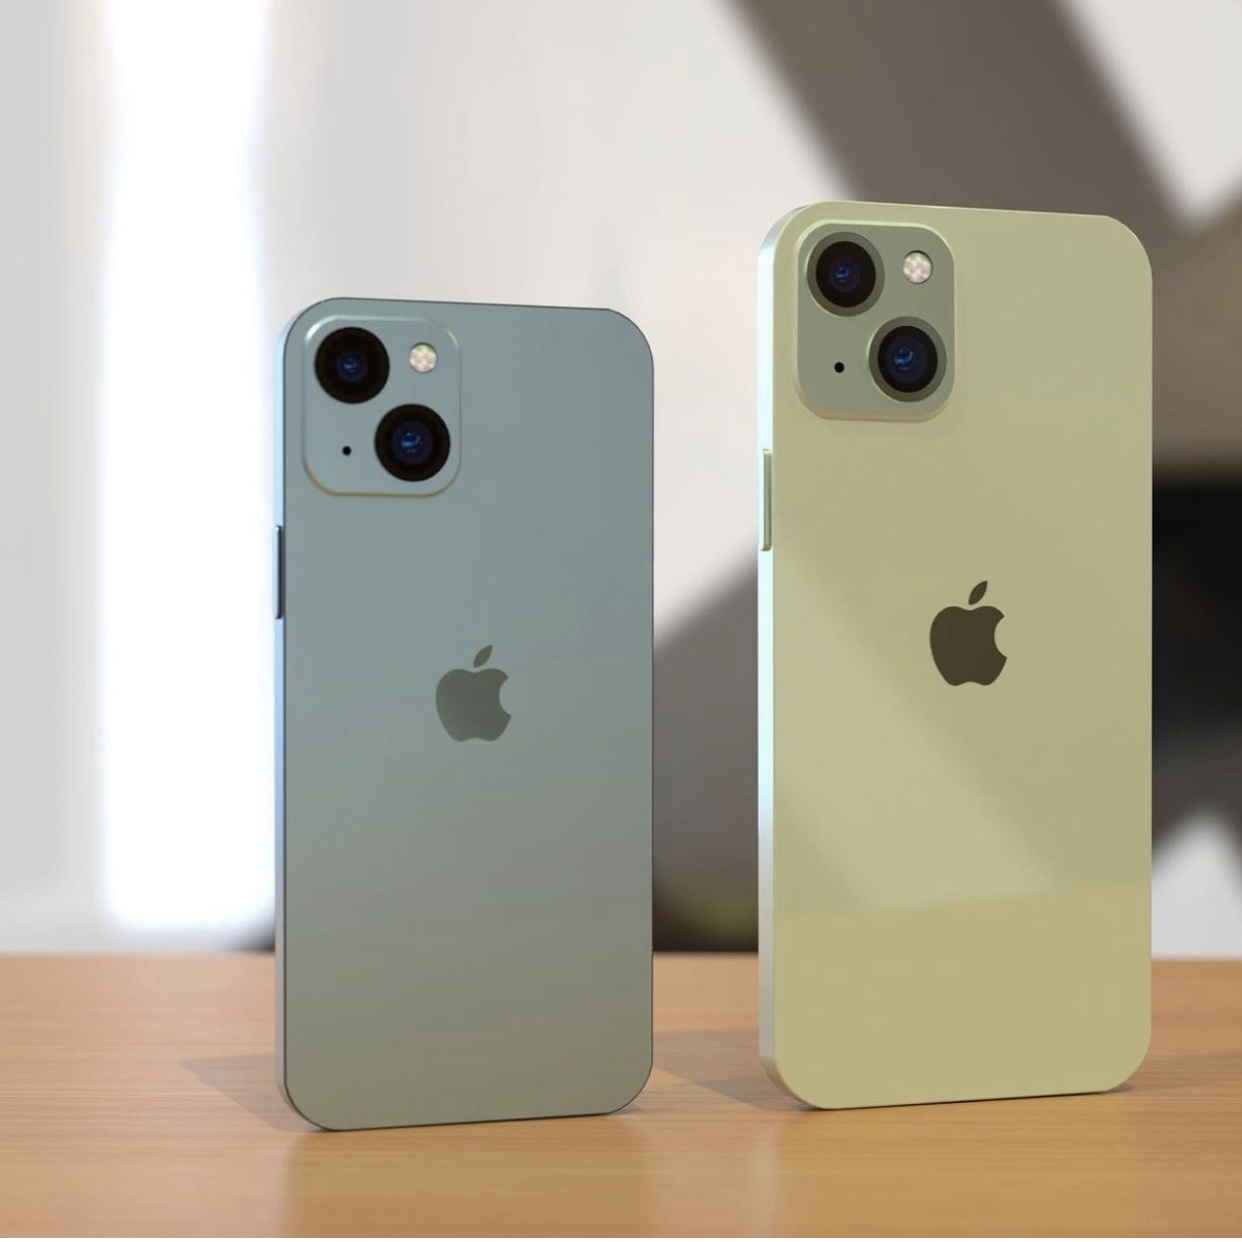 Trước ngày ra mắt, iPhone 13 lộ concept màu ocean blue giống hệt hint trên thư mời? - Ảnh 5.